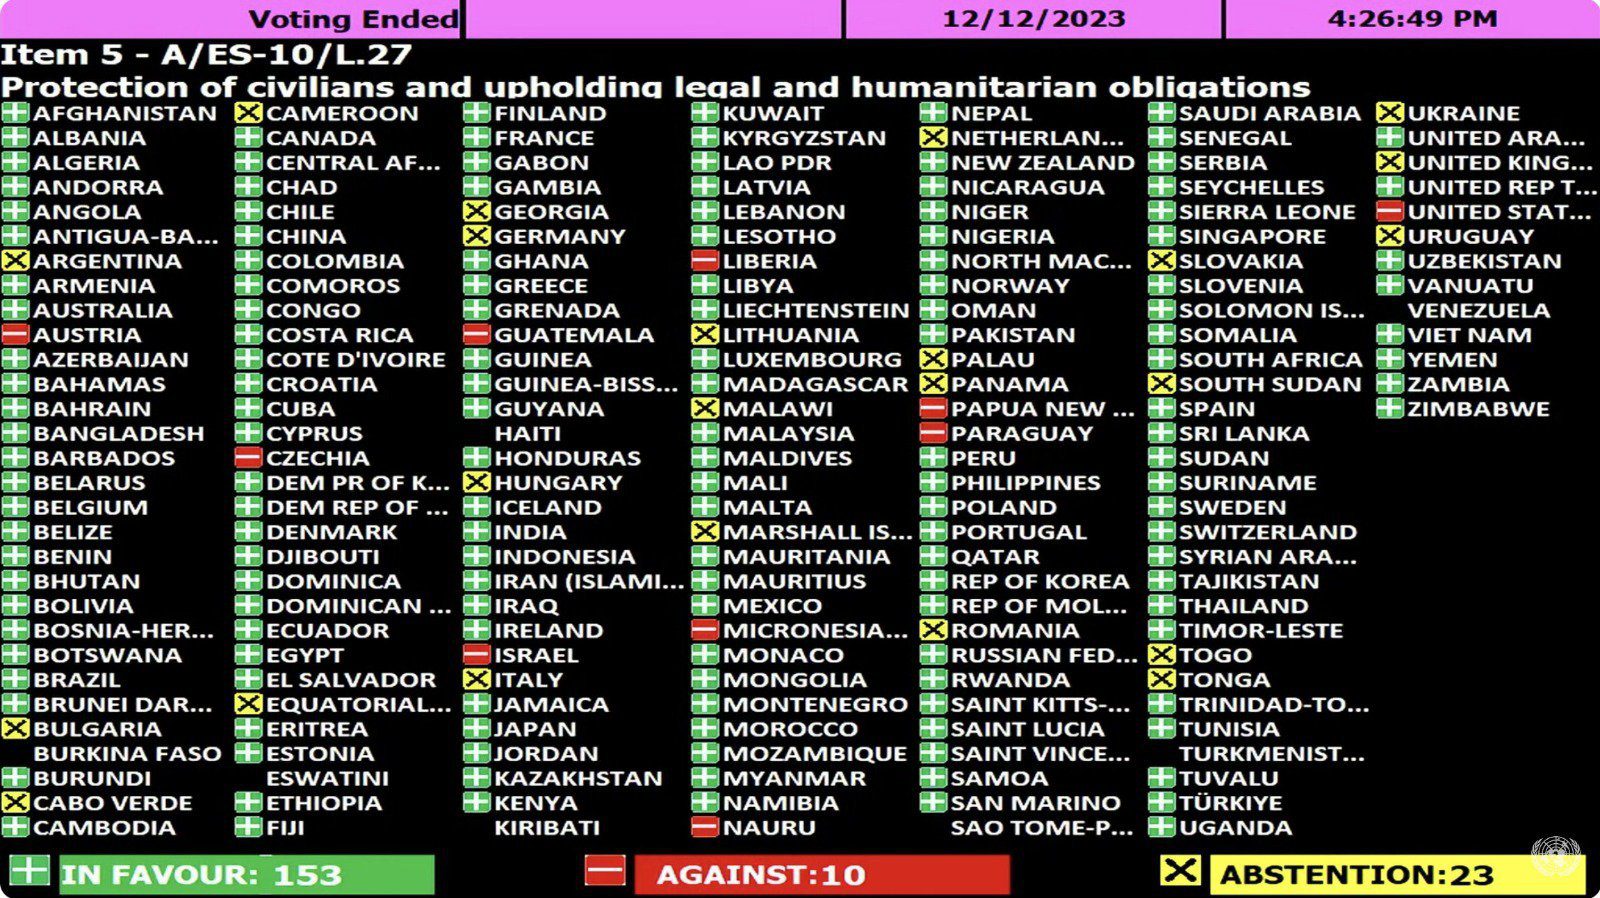 عاجل أقرّت الجمعية العامة للأمم المتحدة في اجتماع طارئ قبل قليل مشروع قرار يدعو إلى «وقف إطلاق نار إنساني فوري» في قطاع غزة. وصوتت لصالح مشروع القرار 153 دولة، وضدّه 10 دول، فيما امتنعت 23 دولة عن التصويت.